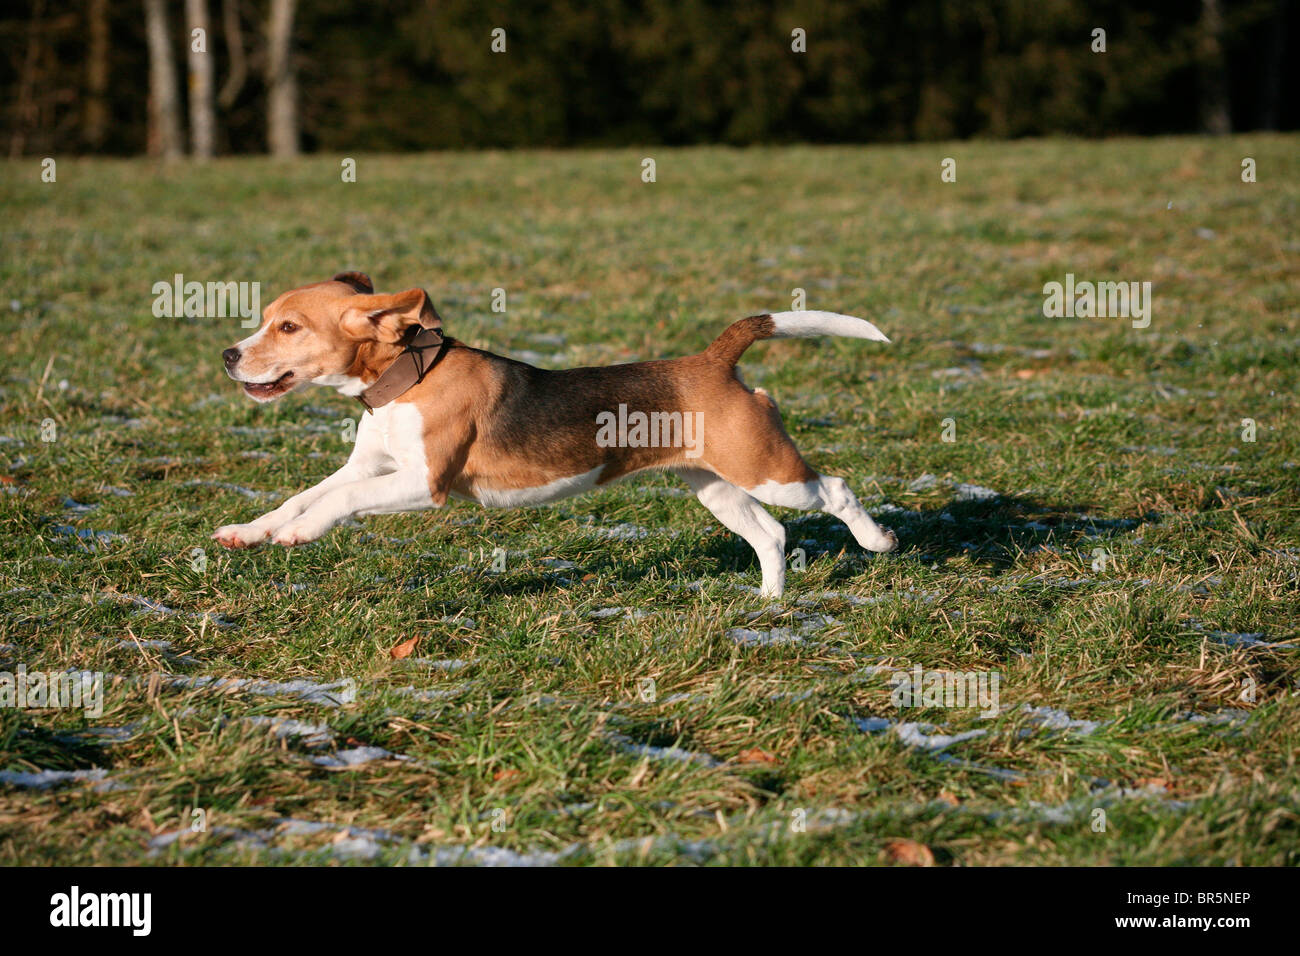 Beagle, hunting dog Stock Photo